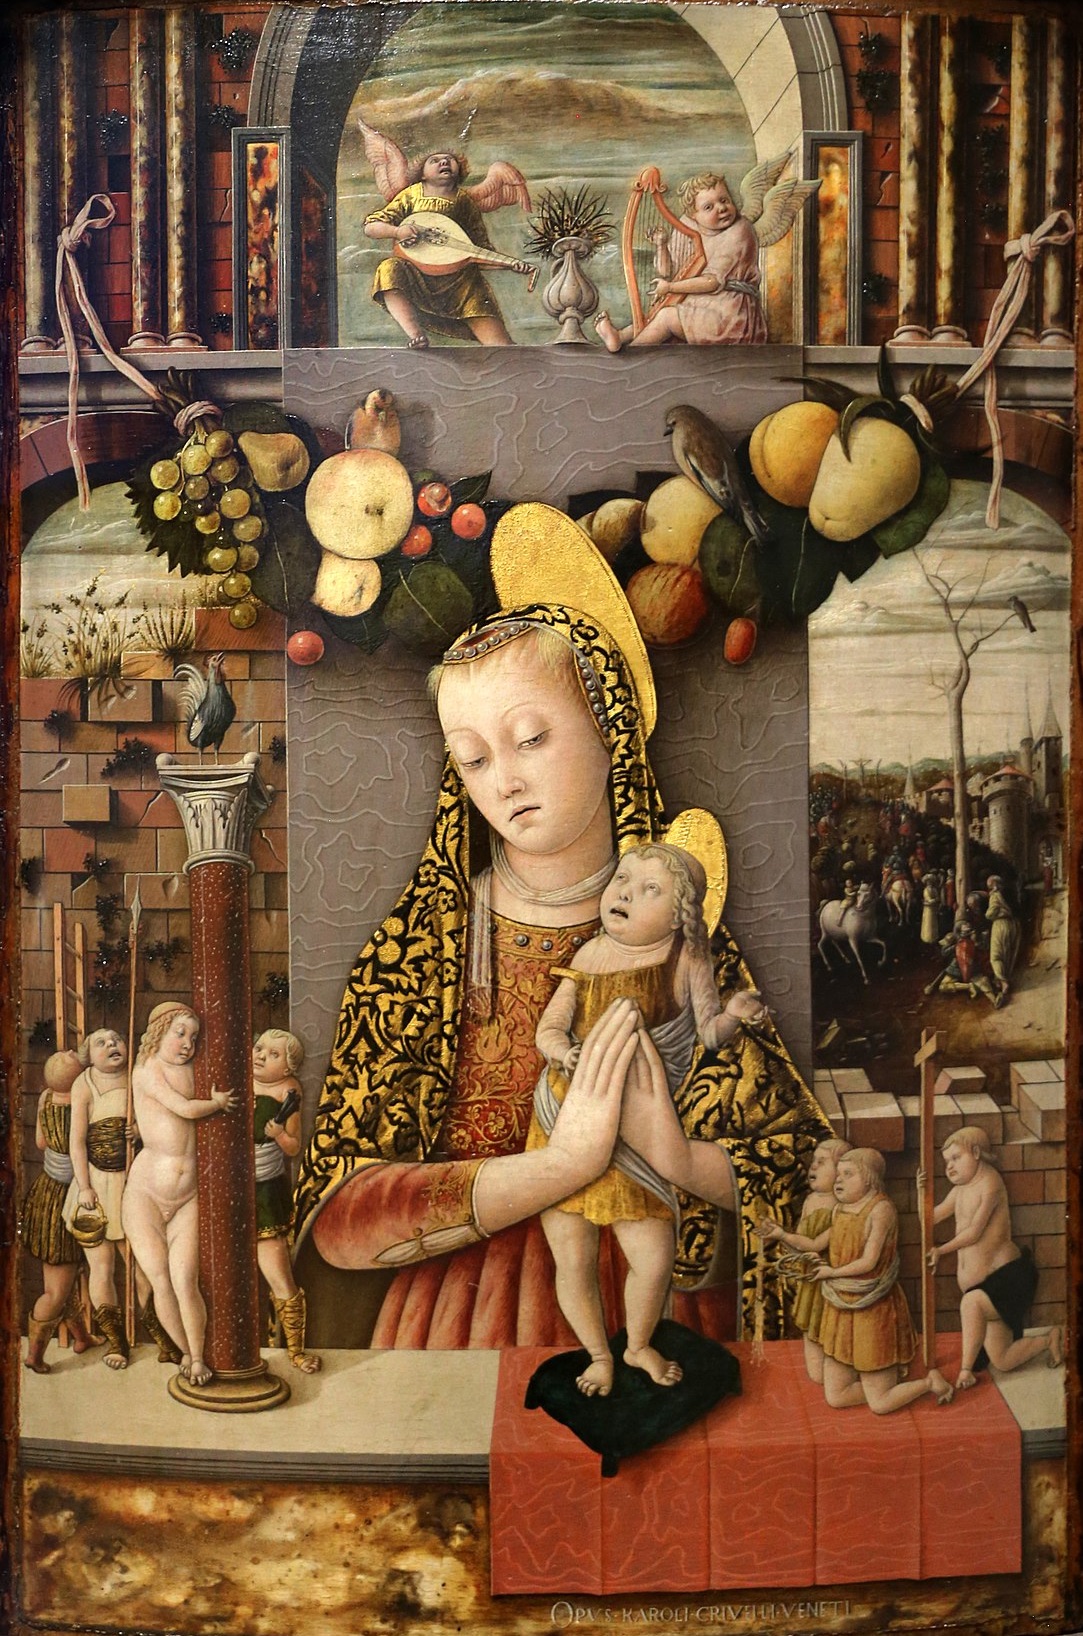 Madonna of the Passion by Carlo Crivelli - 1455 - 1459 - 71 x 48 cm Museo di Castelvecchio